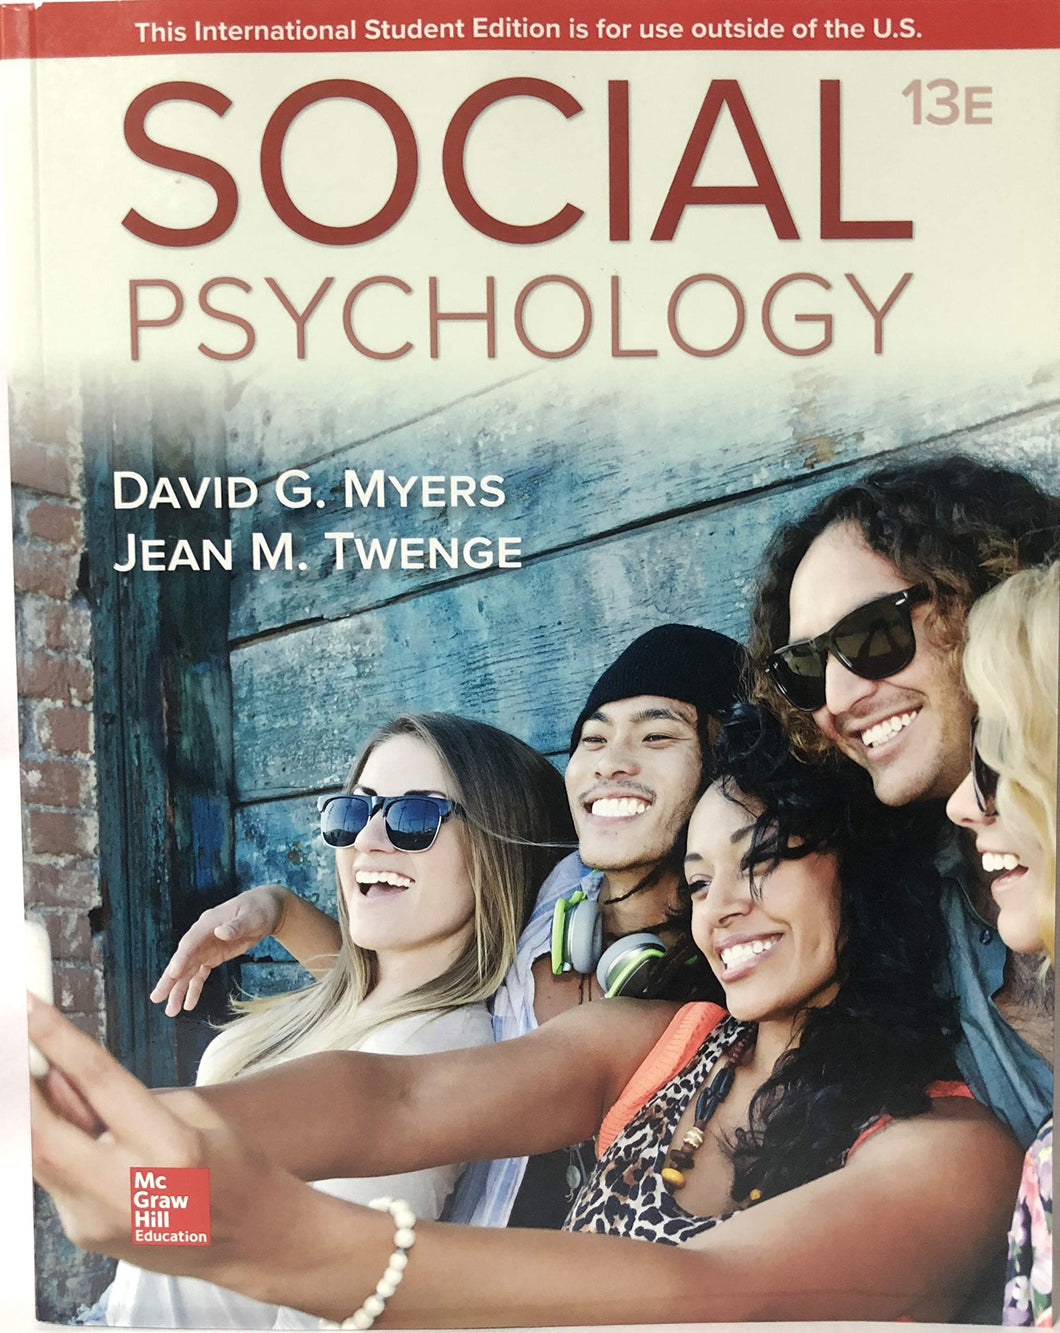 Social Psychology [Paperback] 13e by David Myers